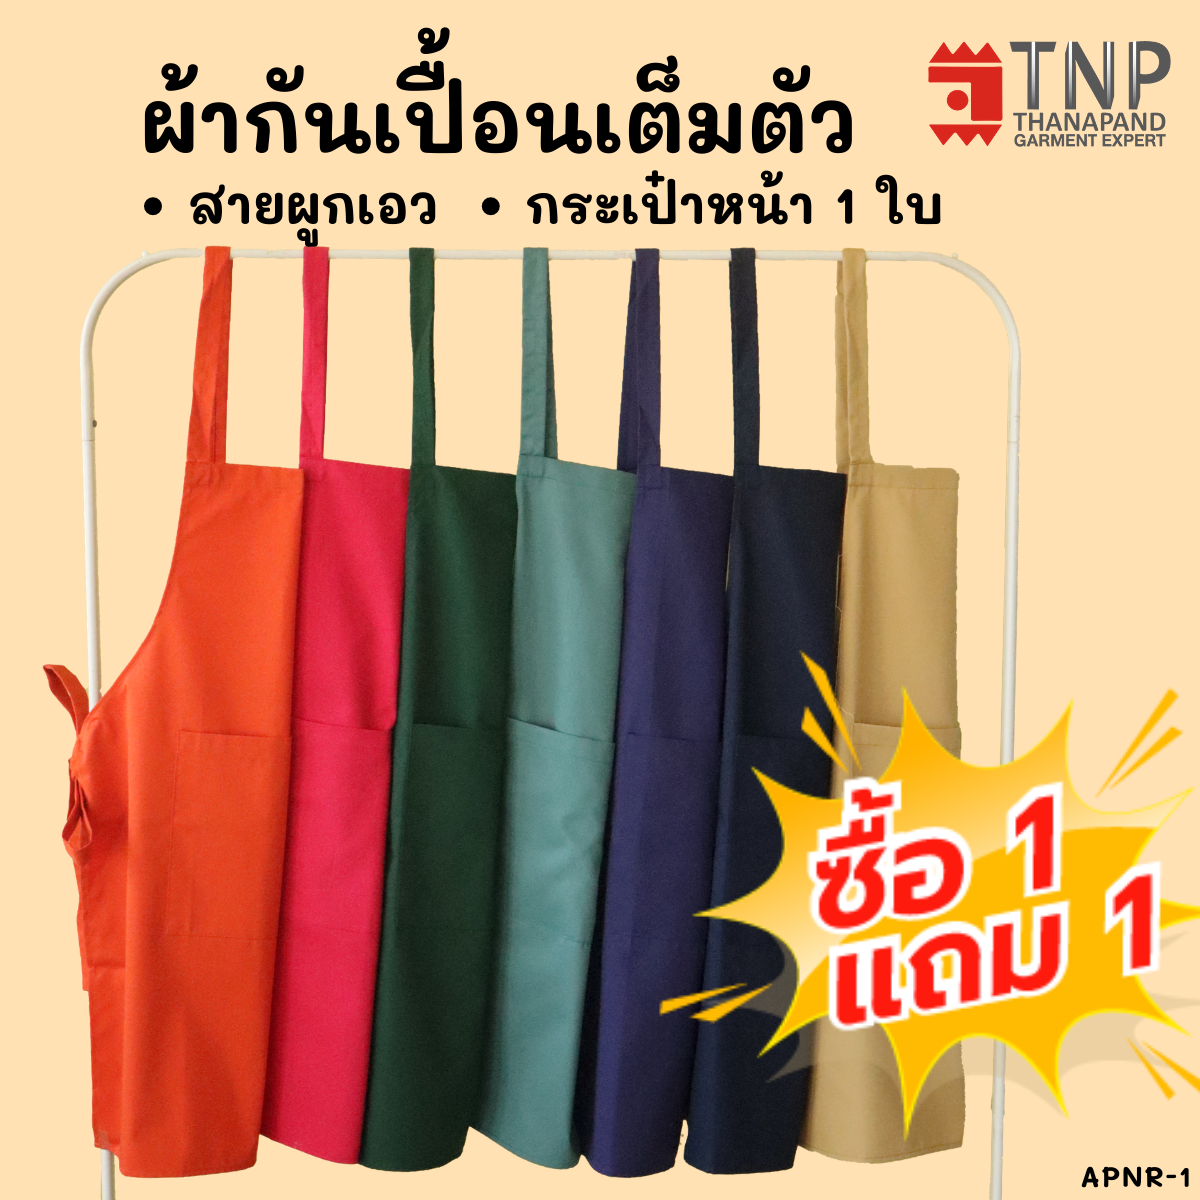 🎉ซื้อ1เเถม1 ผ้ากันเปื้อน ผ้ากันเปื้อนเต็มตัวกระเป๋าหน้า  รหัส: APNR1-1 (TNP-Thanapand ฐานะภัณฑ์)